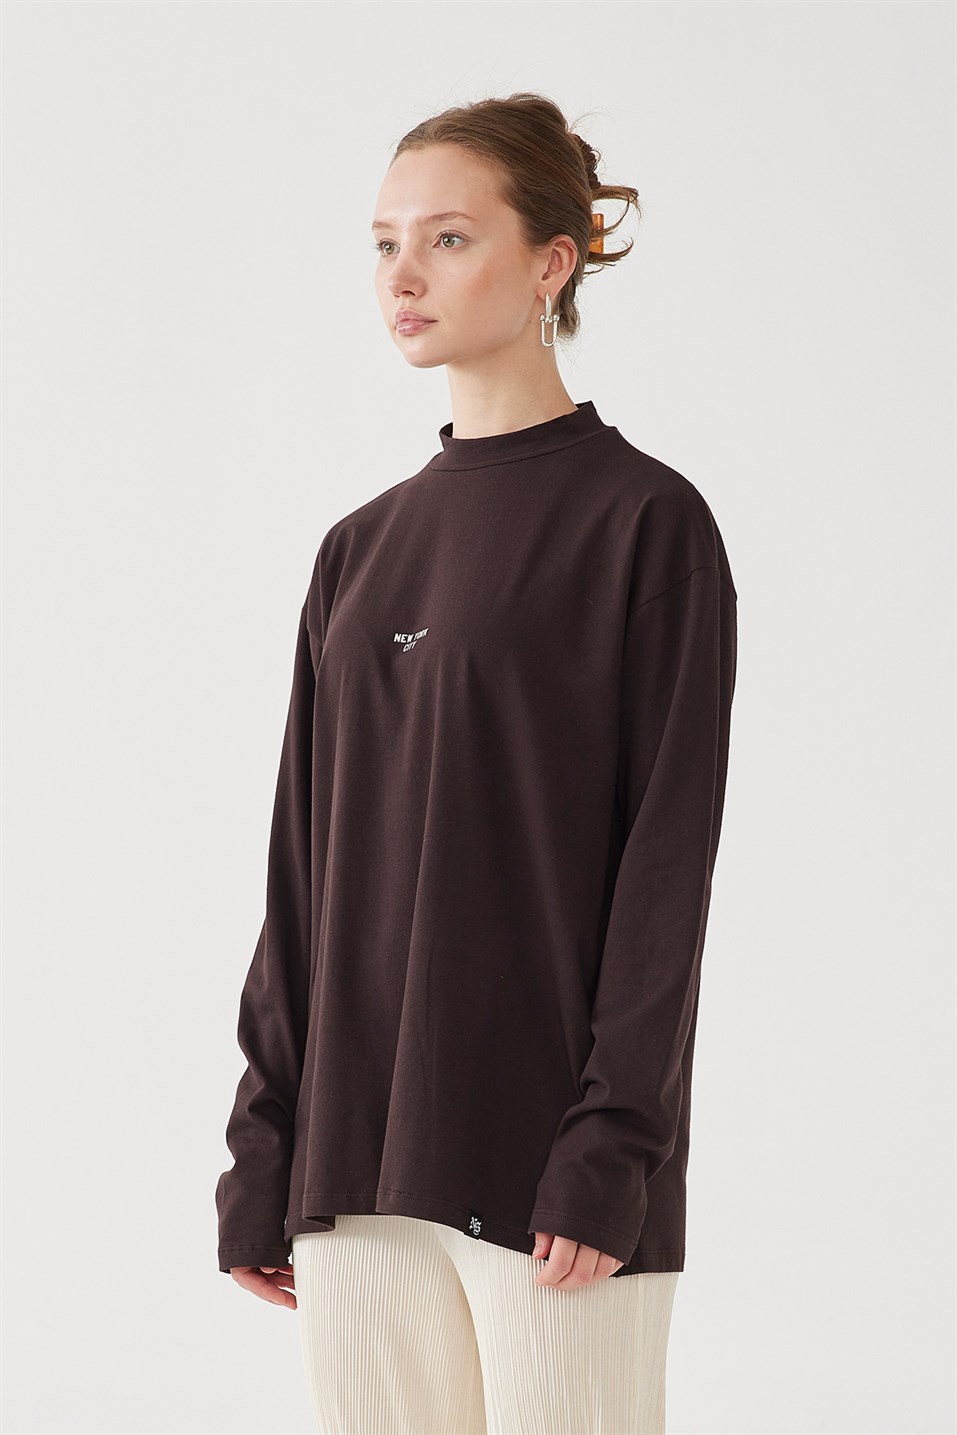 Nyc Dark Brown Cotton Sweatshirt